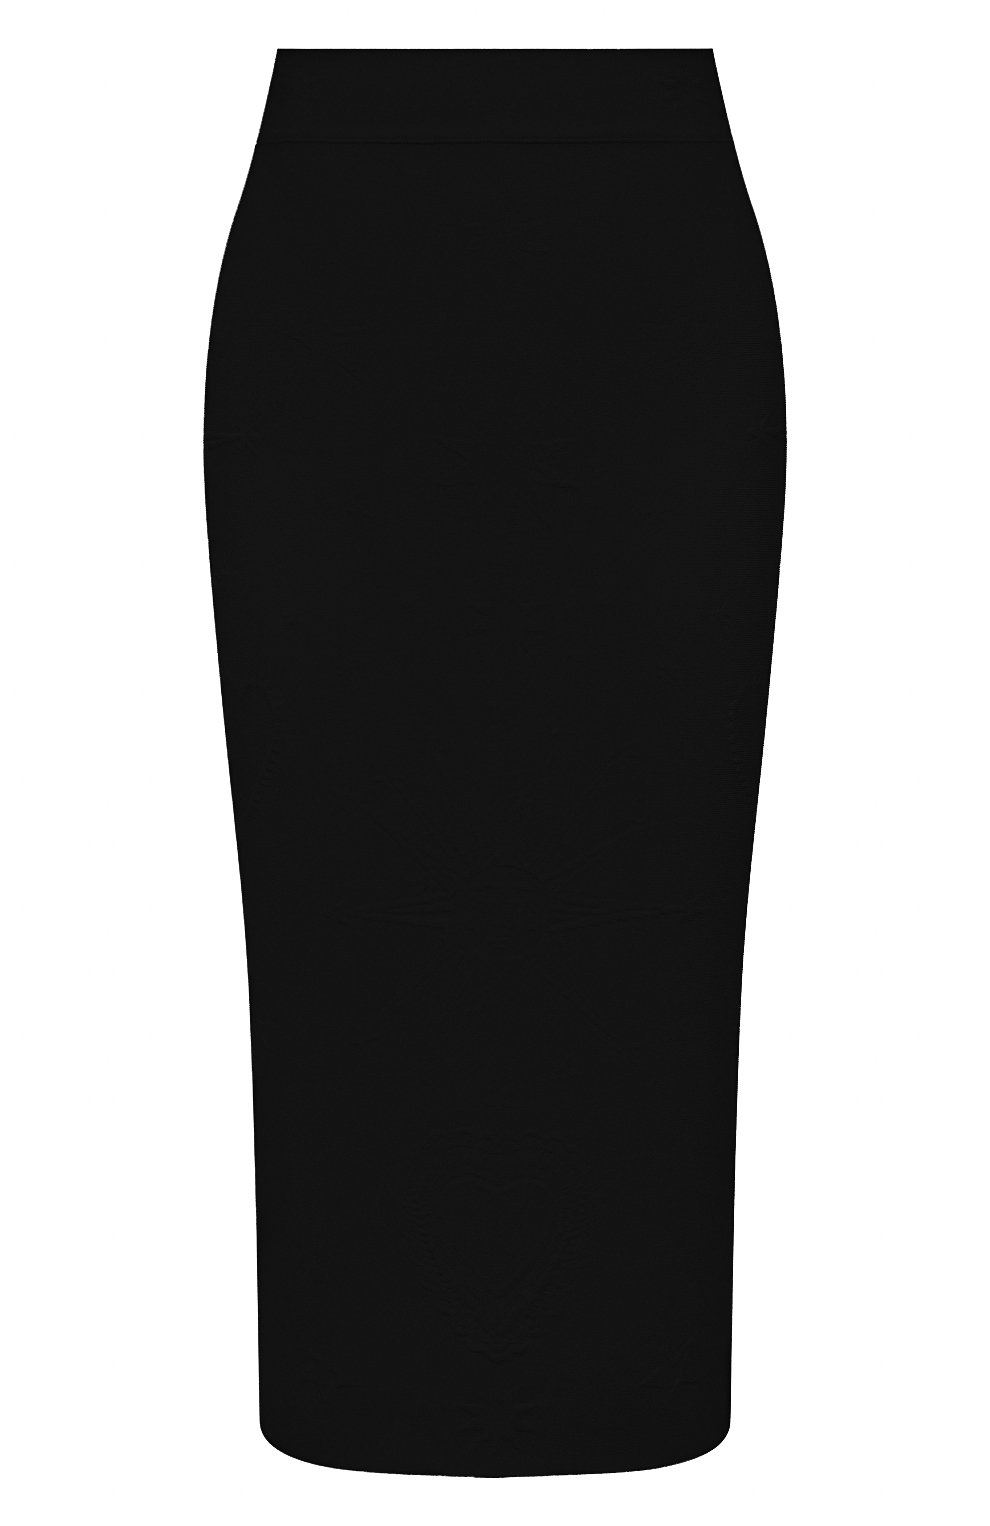 Женская юбка из вискозы ALEXANDER MCQUEEN черного цвета, арт. 667773/Q1AVB | Фото 1 (Женское Кросс-КТ: Юбка-карандаш, Юбка-одежда; Кросс-КТ: Трикотаж; Длина Ж (юбки, платья, шорты): До колена; Материал внешний: Вискоза; Стили: Кэжуэл)